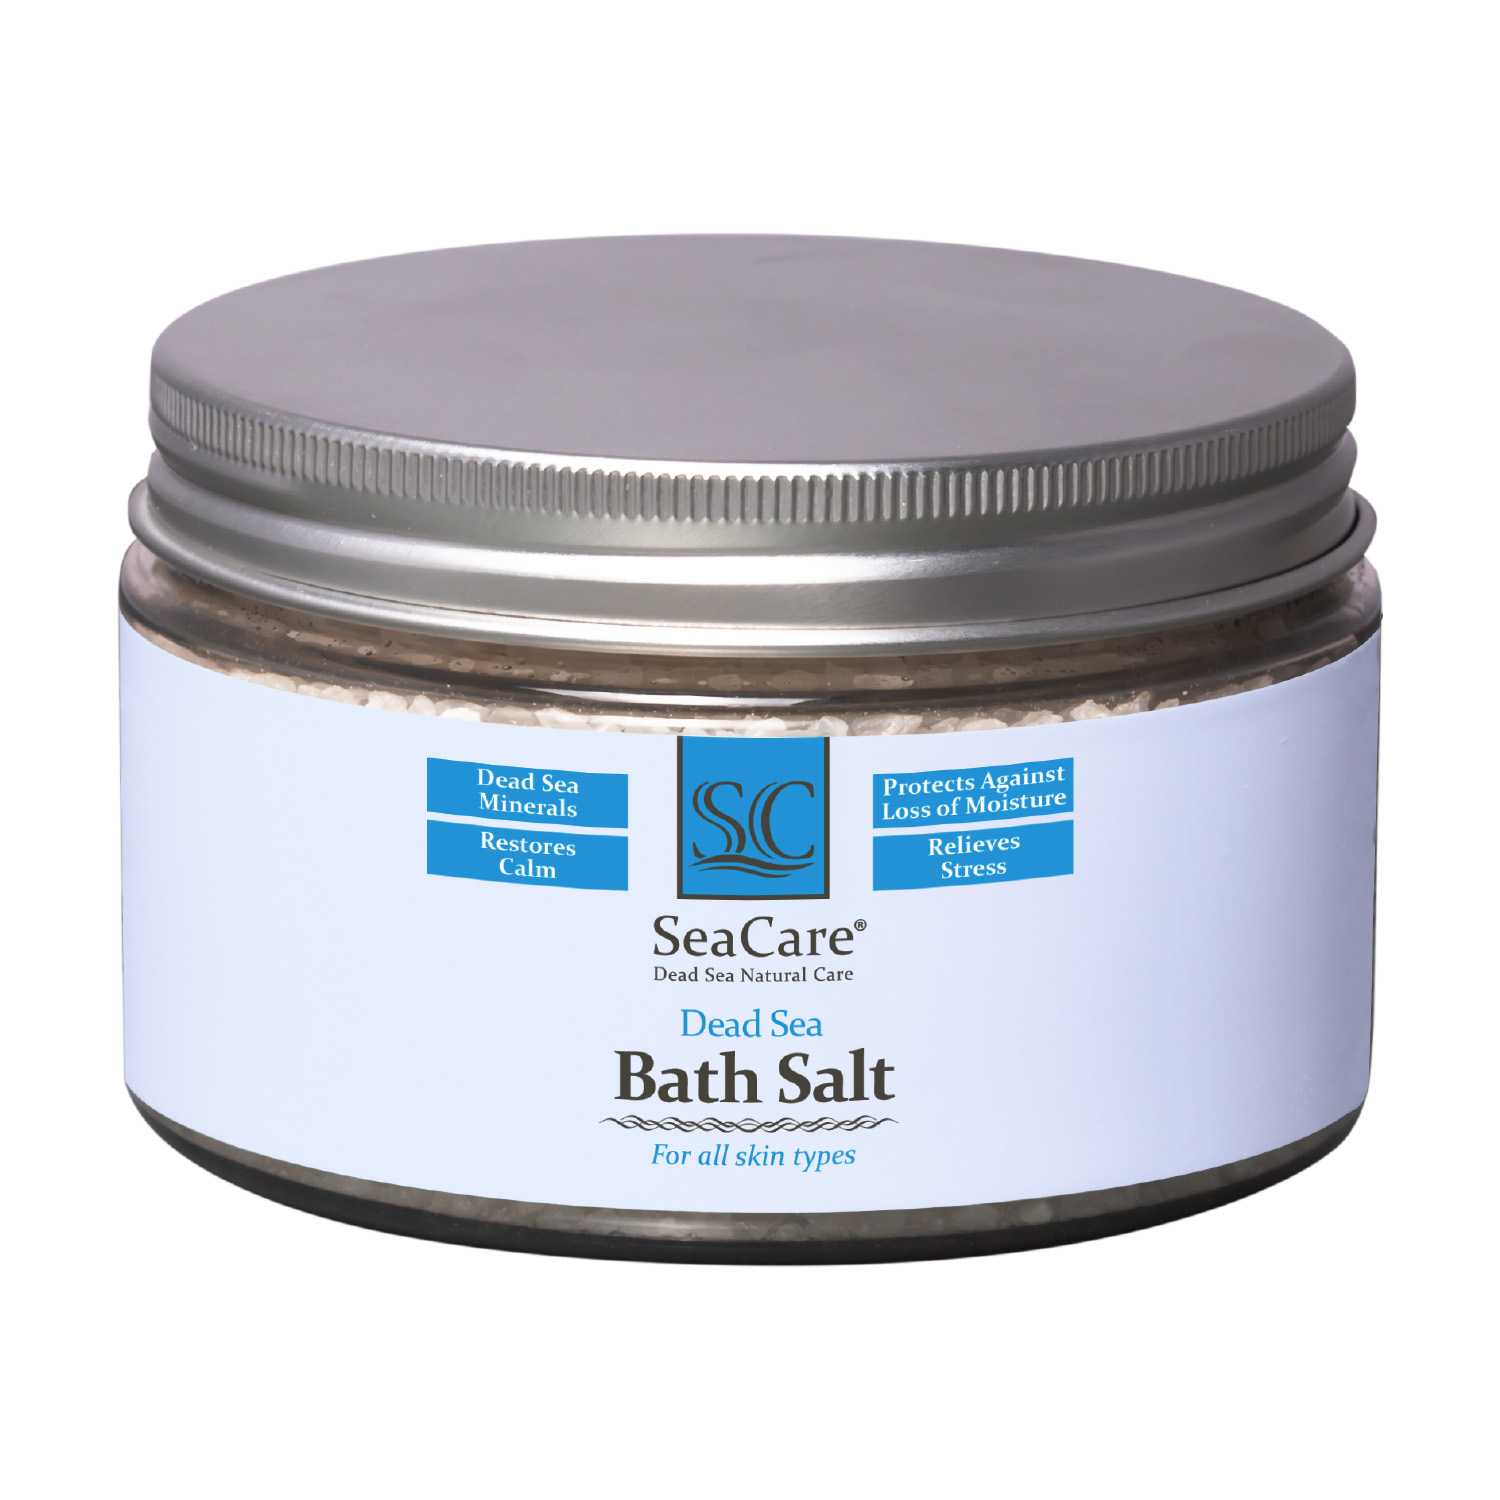 Соль для ванны SeaCare с минералами мертвого моря 300 г соль мертвого моря для ванны ayoume dead sea salt